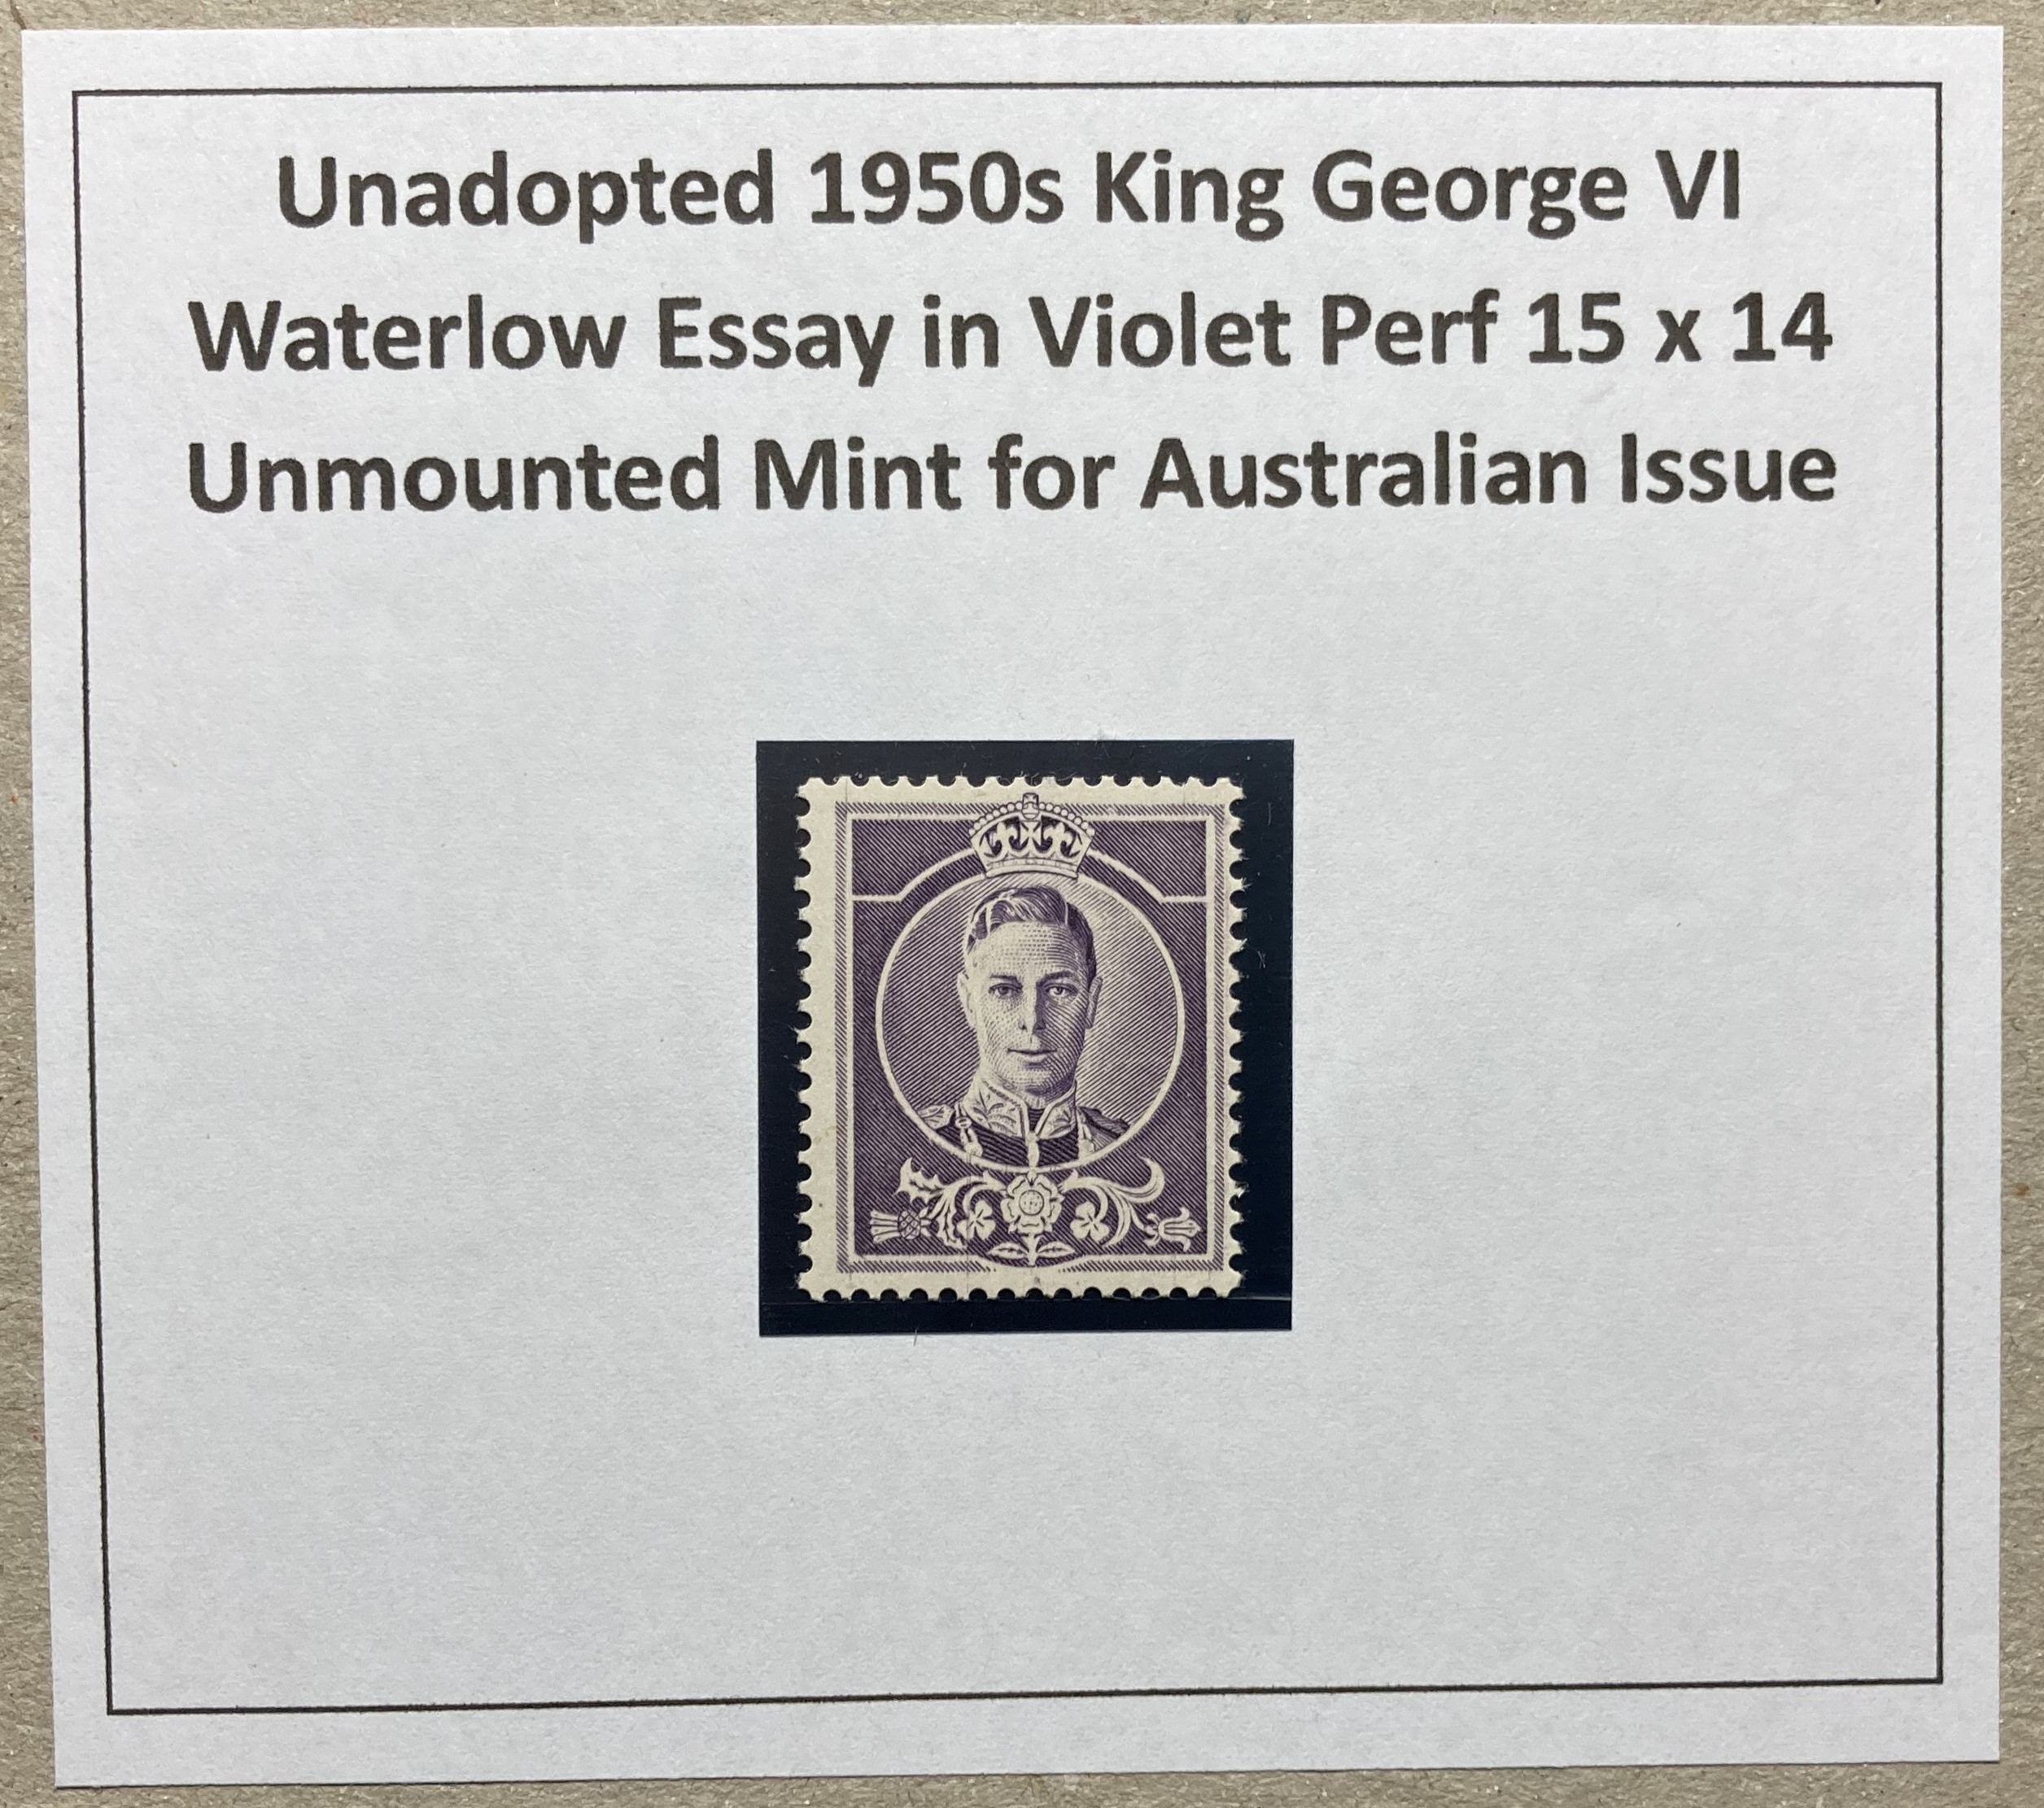 Australia stamp: Unadopted 1950s Waterloo KGVI essay in violet, perf 15x14, unmounted mint.